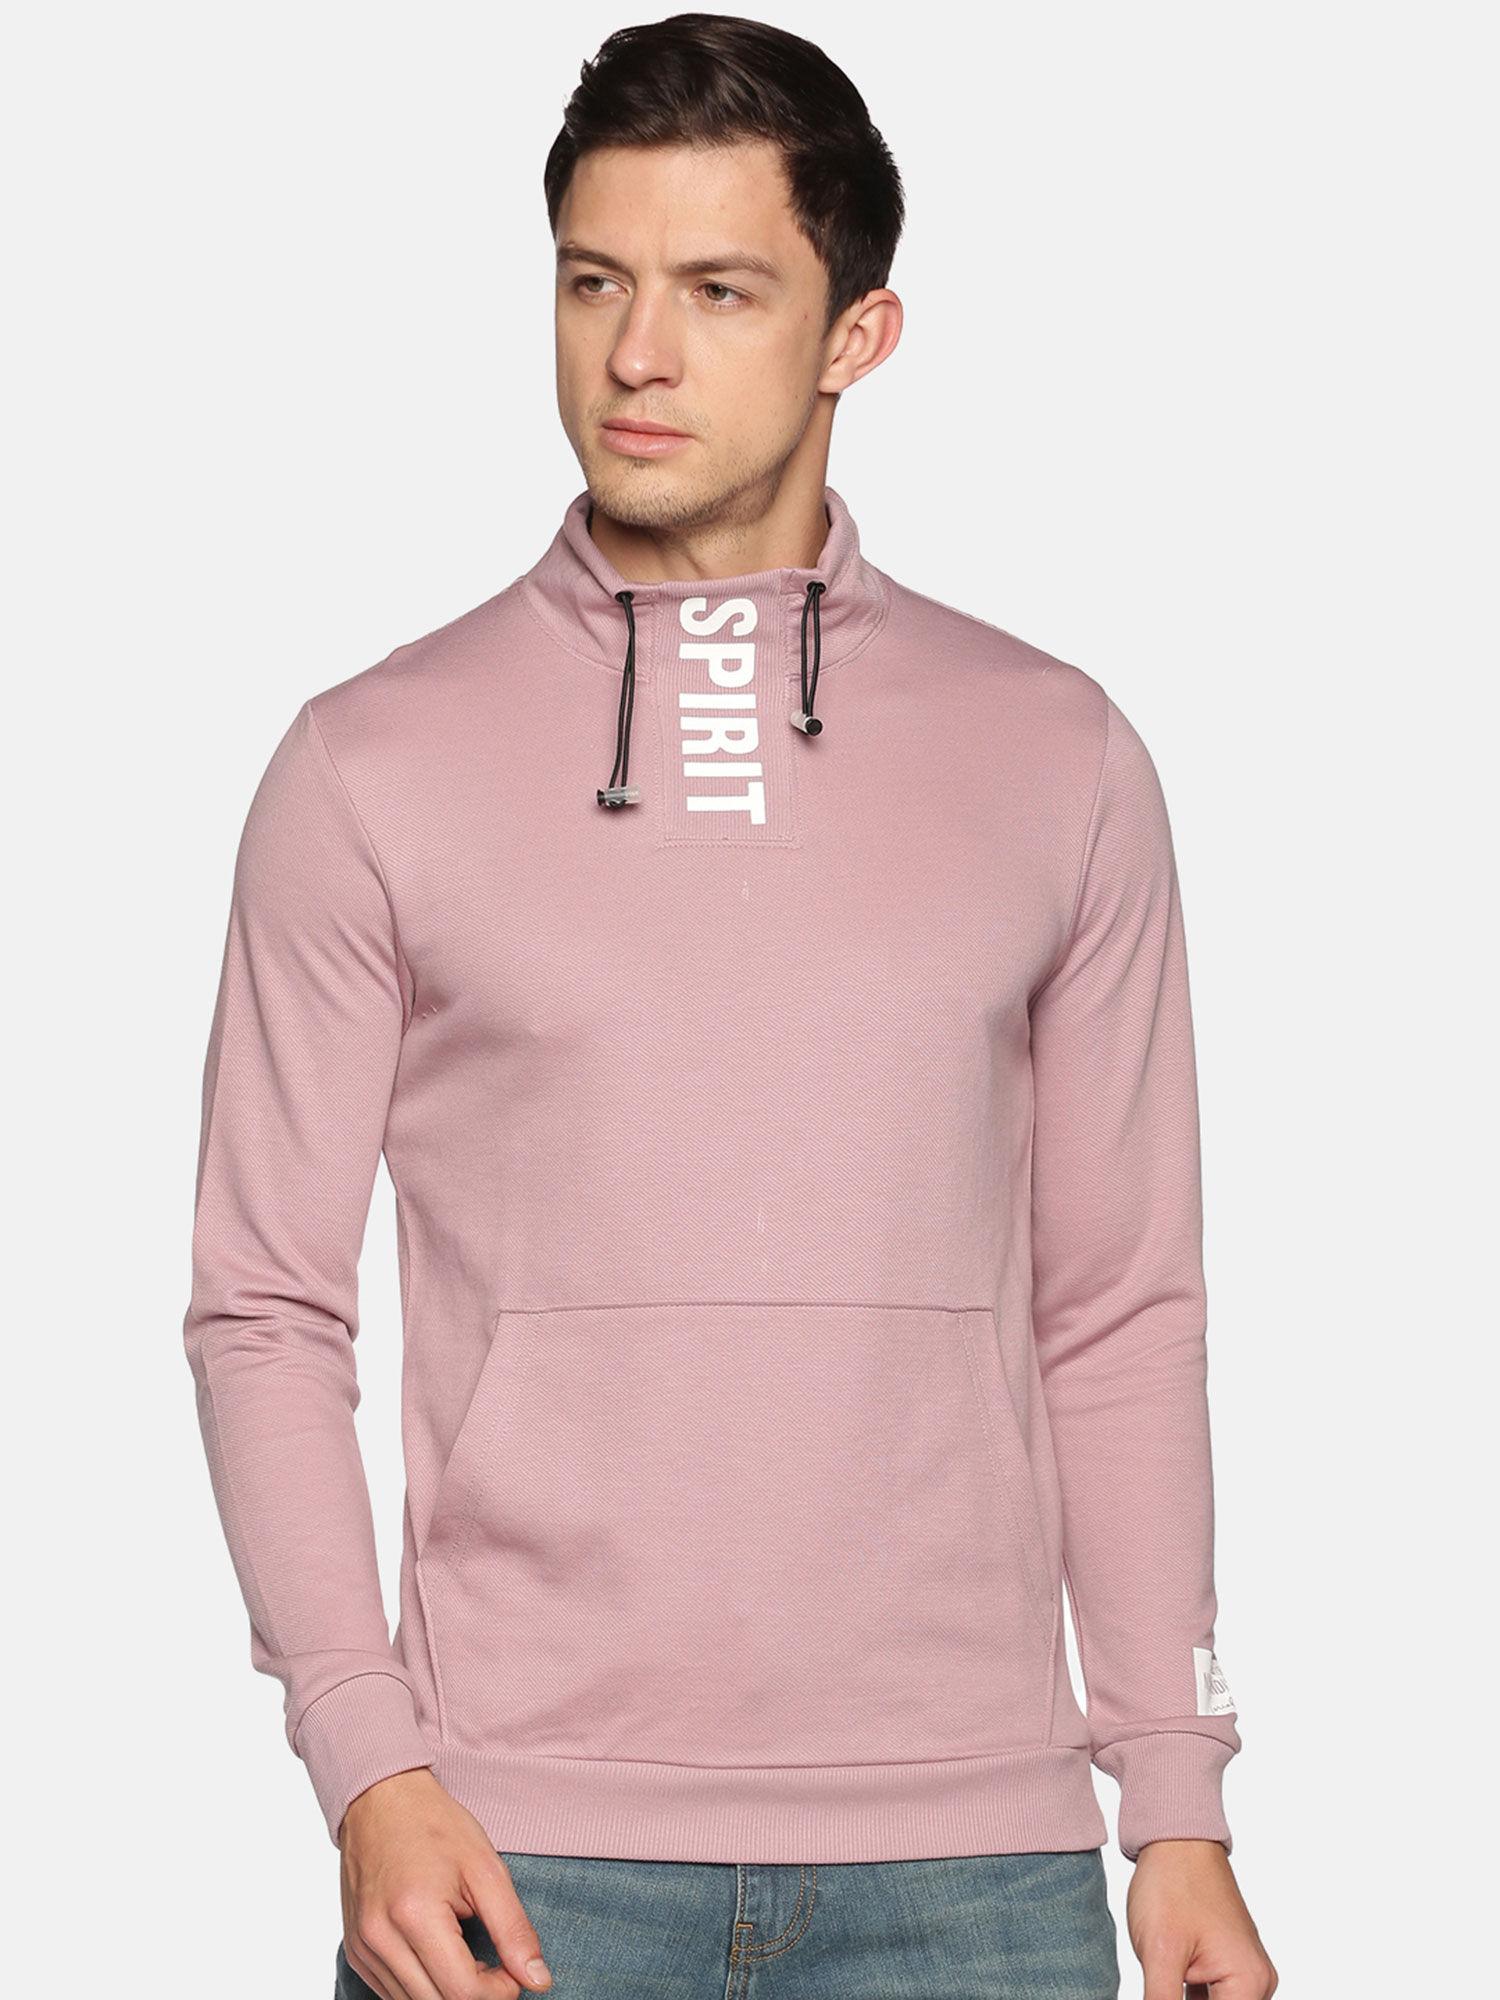 men's-cotton-casual-pink-sweatshirt